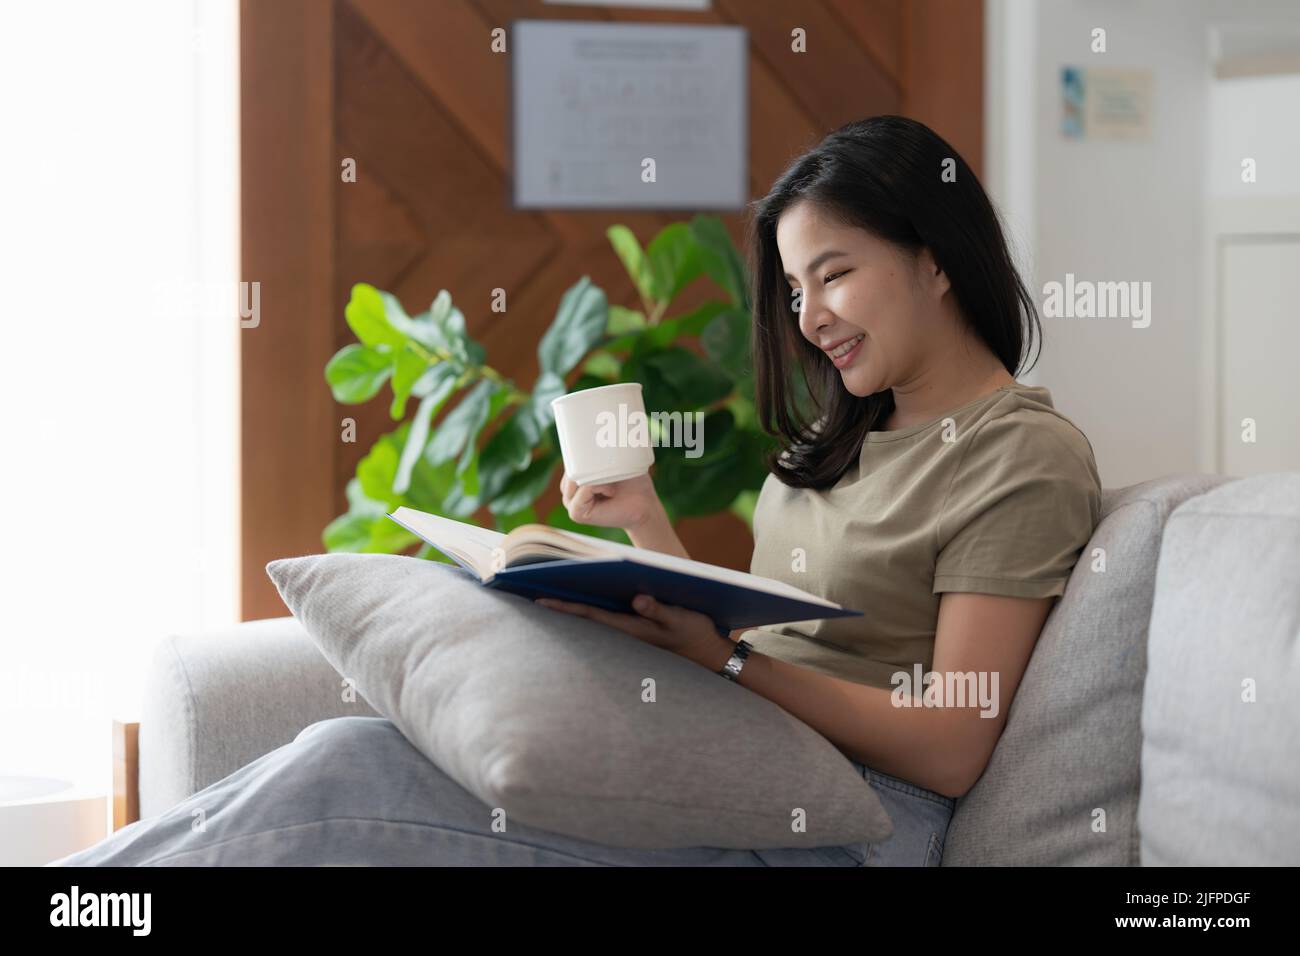 Image d'une jeune femme asiatique lisant un livre assis sur un canapé. Concept de style de vie et de détente. Banque D'Images